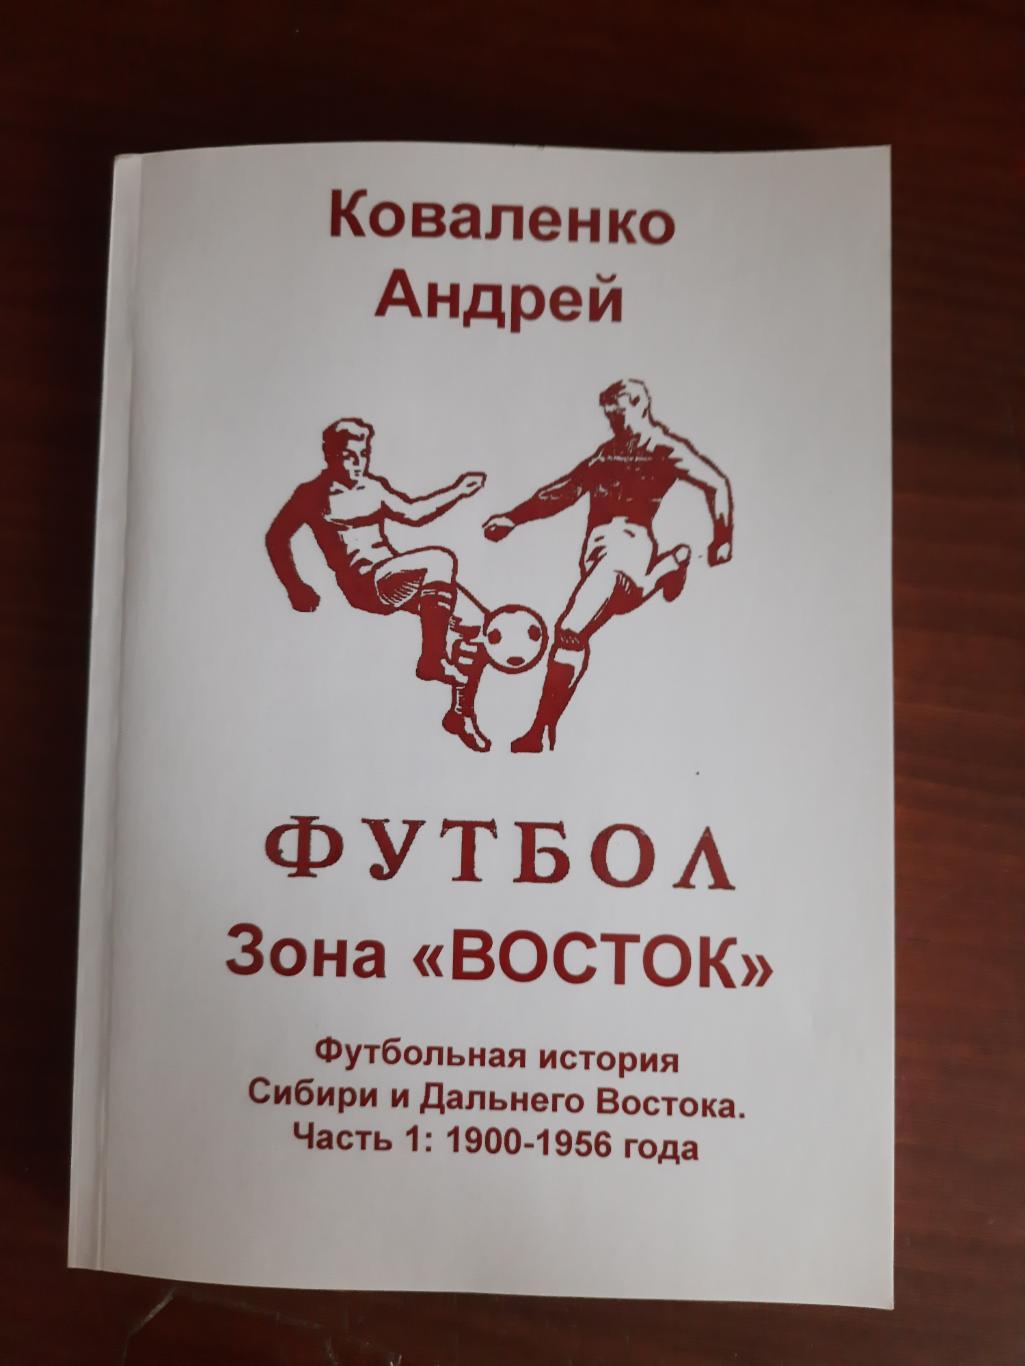 Футбольная история Сибири и Дальнего Востока. Часть 1: 1900-1956 (2022 год)